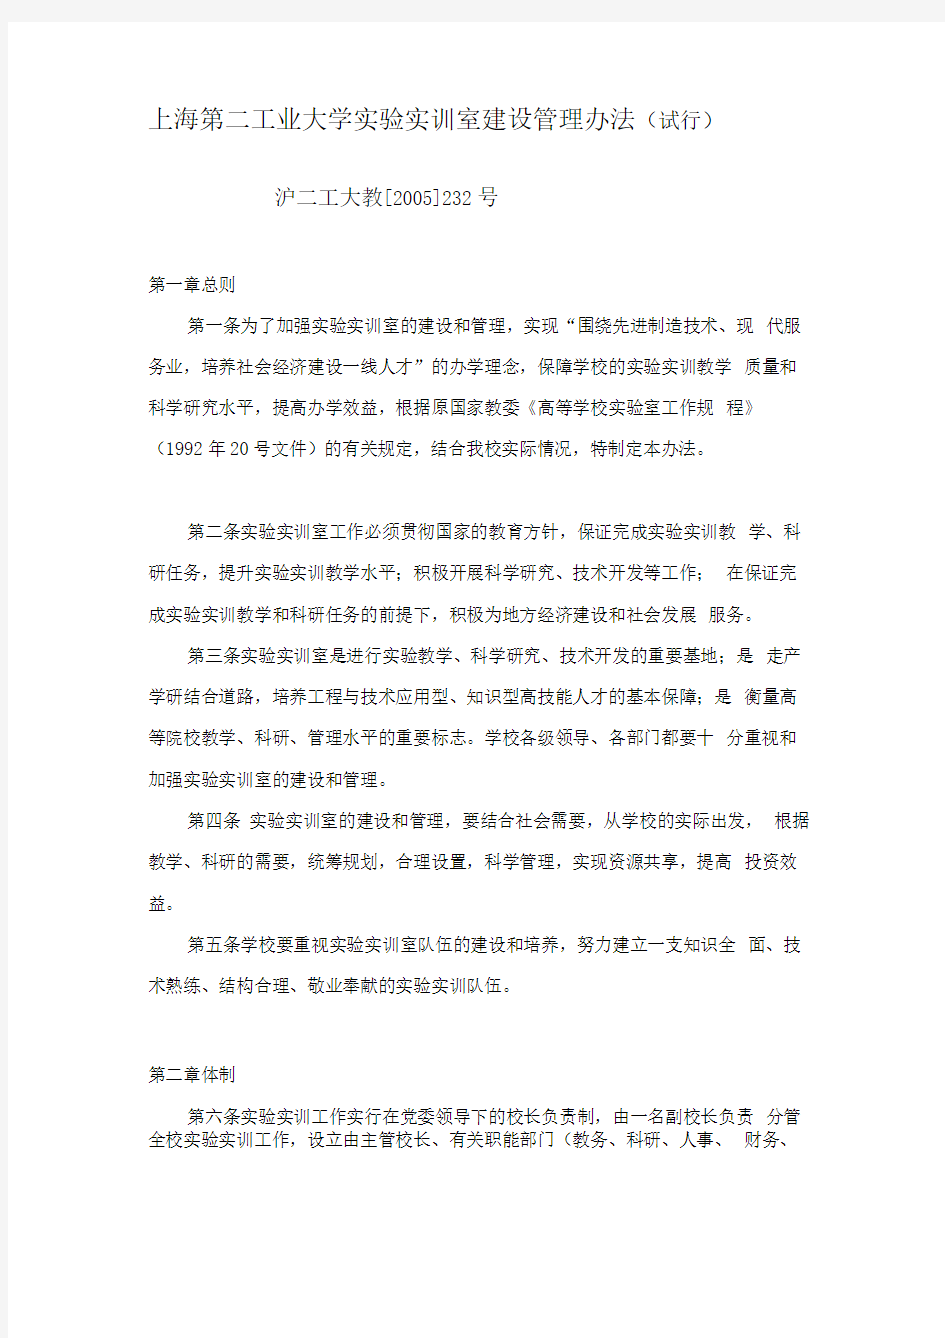 上海第二工业大学实验实训室建设管理办法